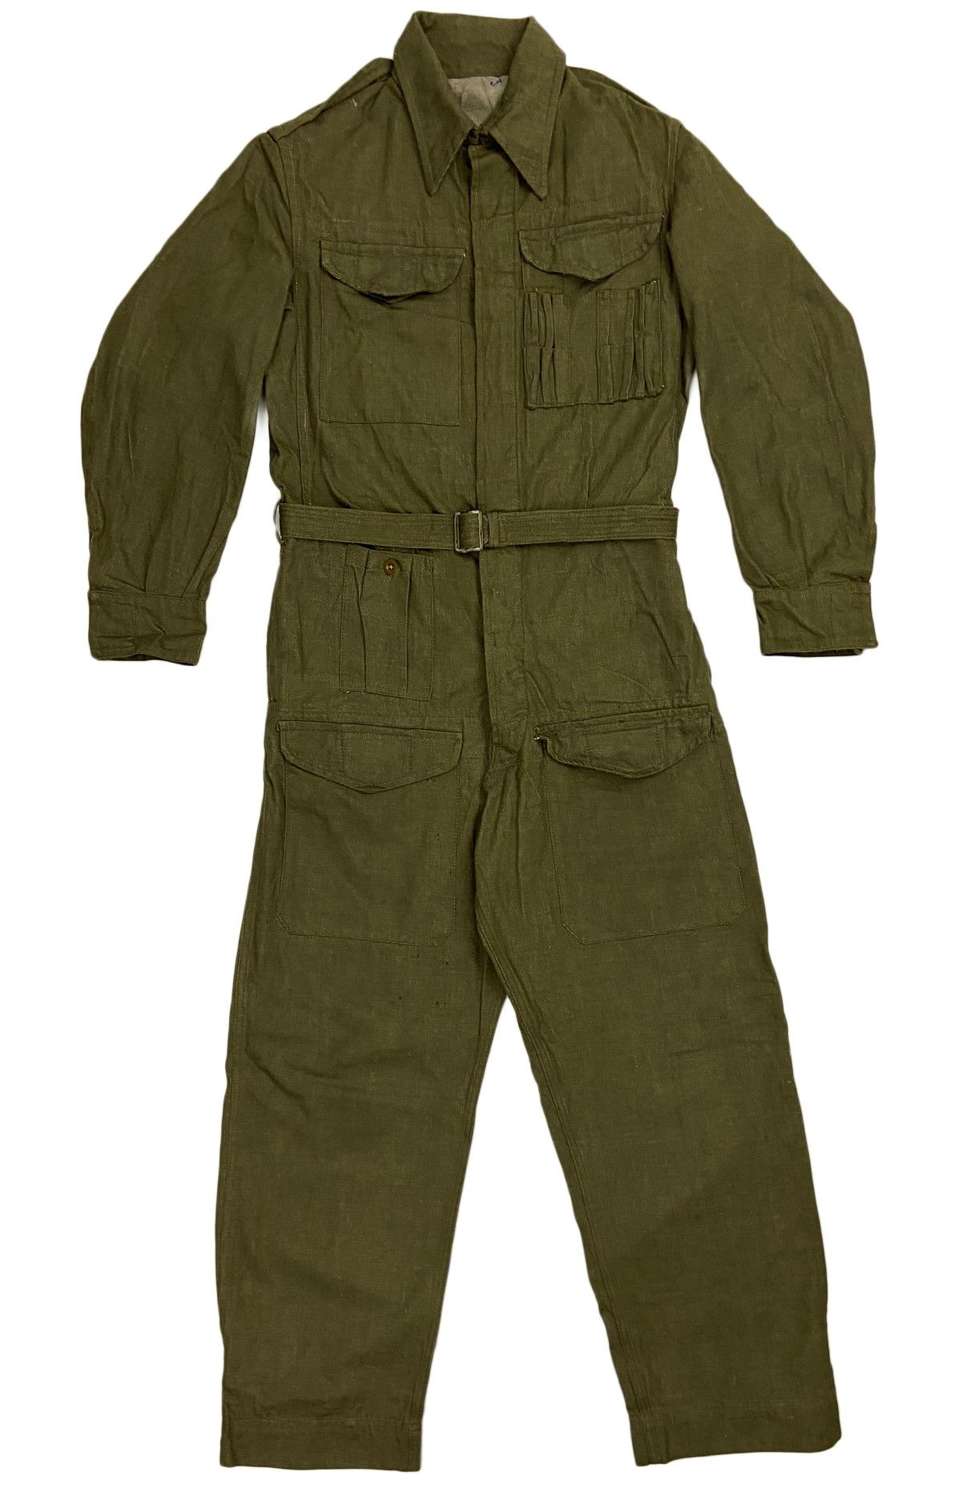 Rare original 1955 Dated British Army Denim Tank Suit